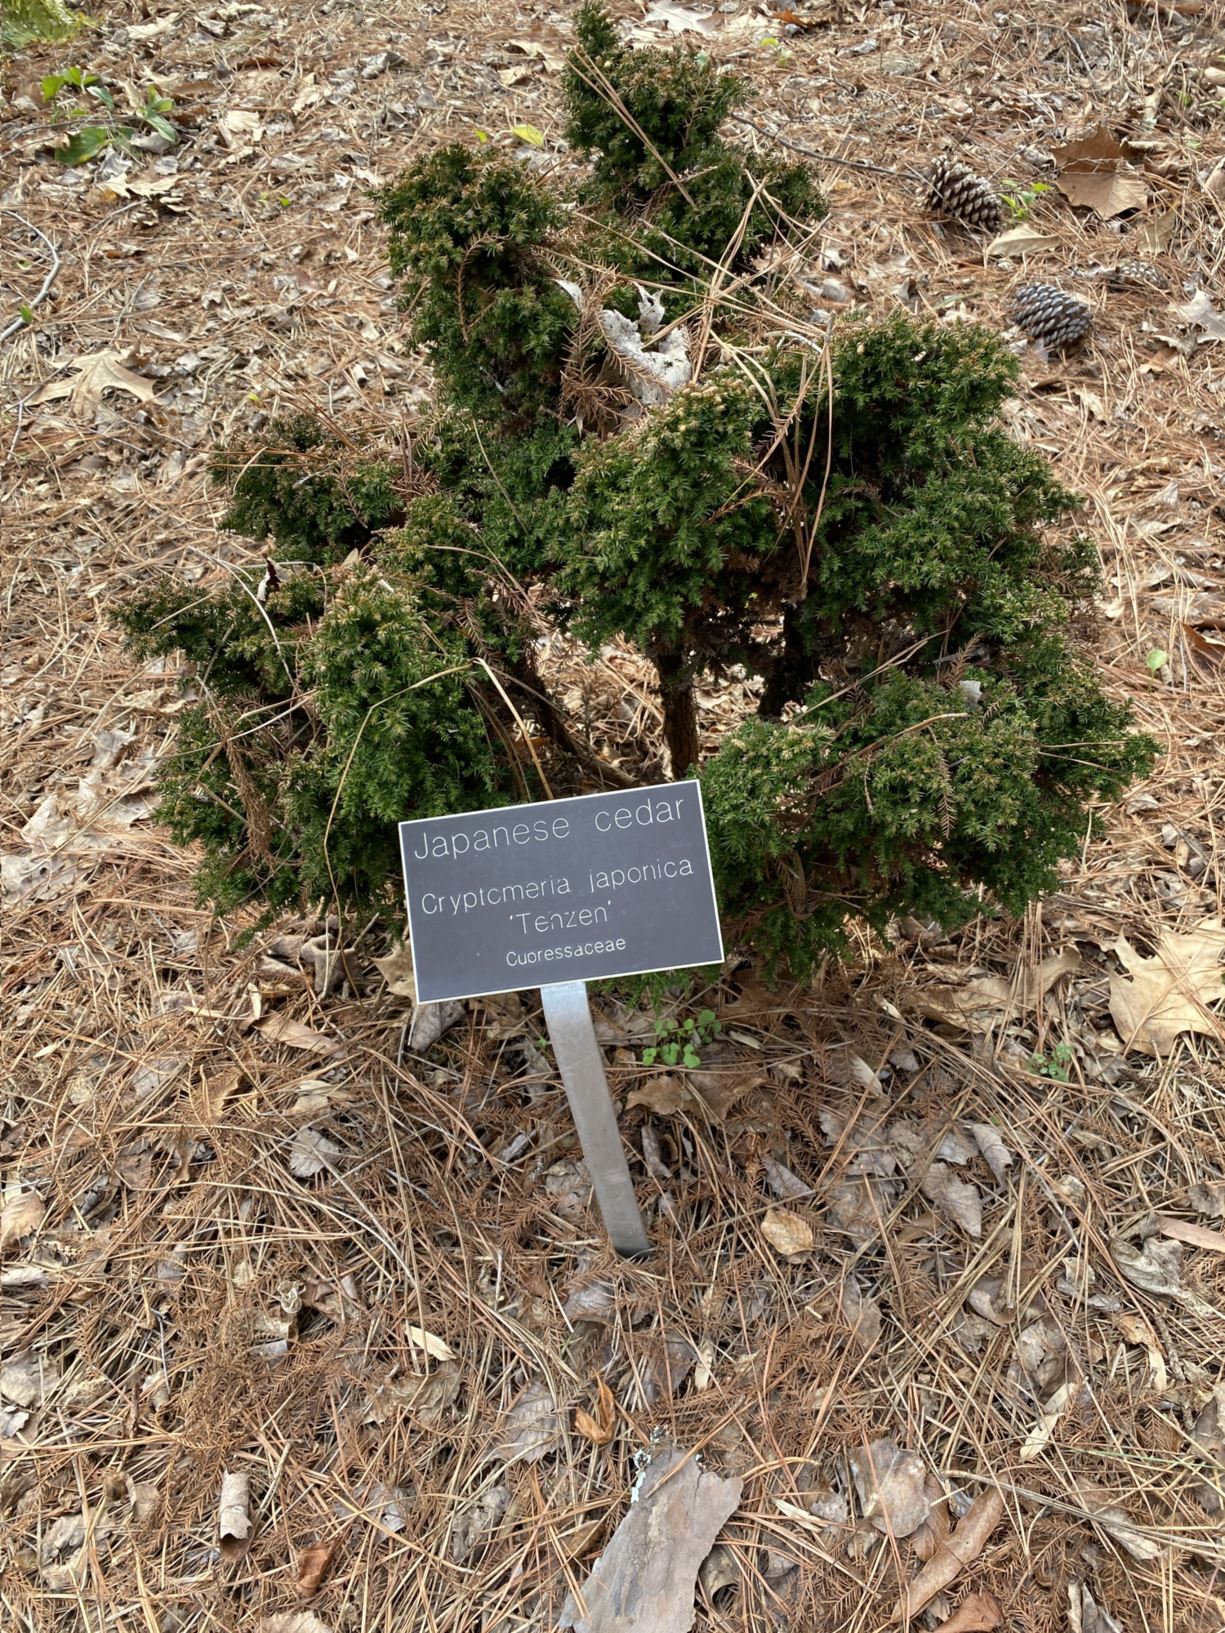 Cryptomeria japonica 'Tenzen' - Japanese cedar